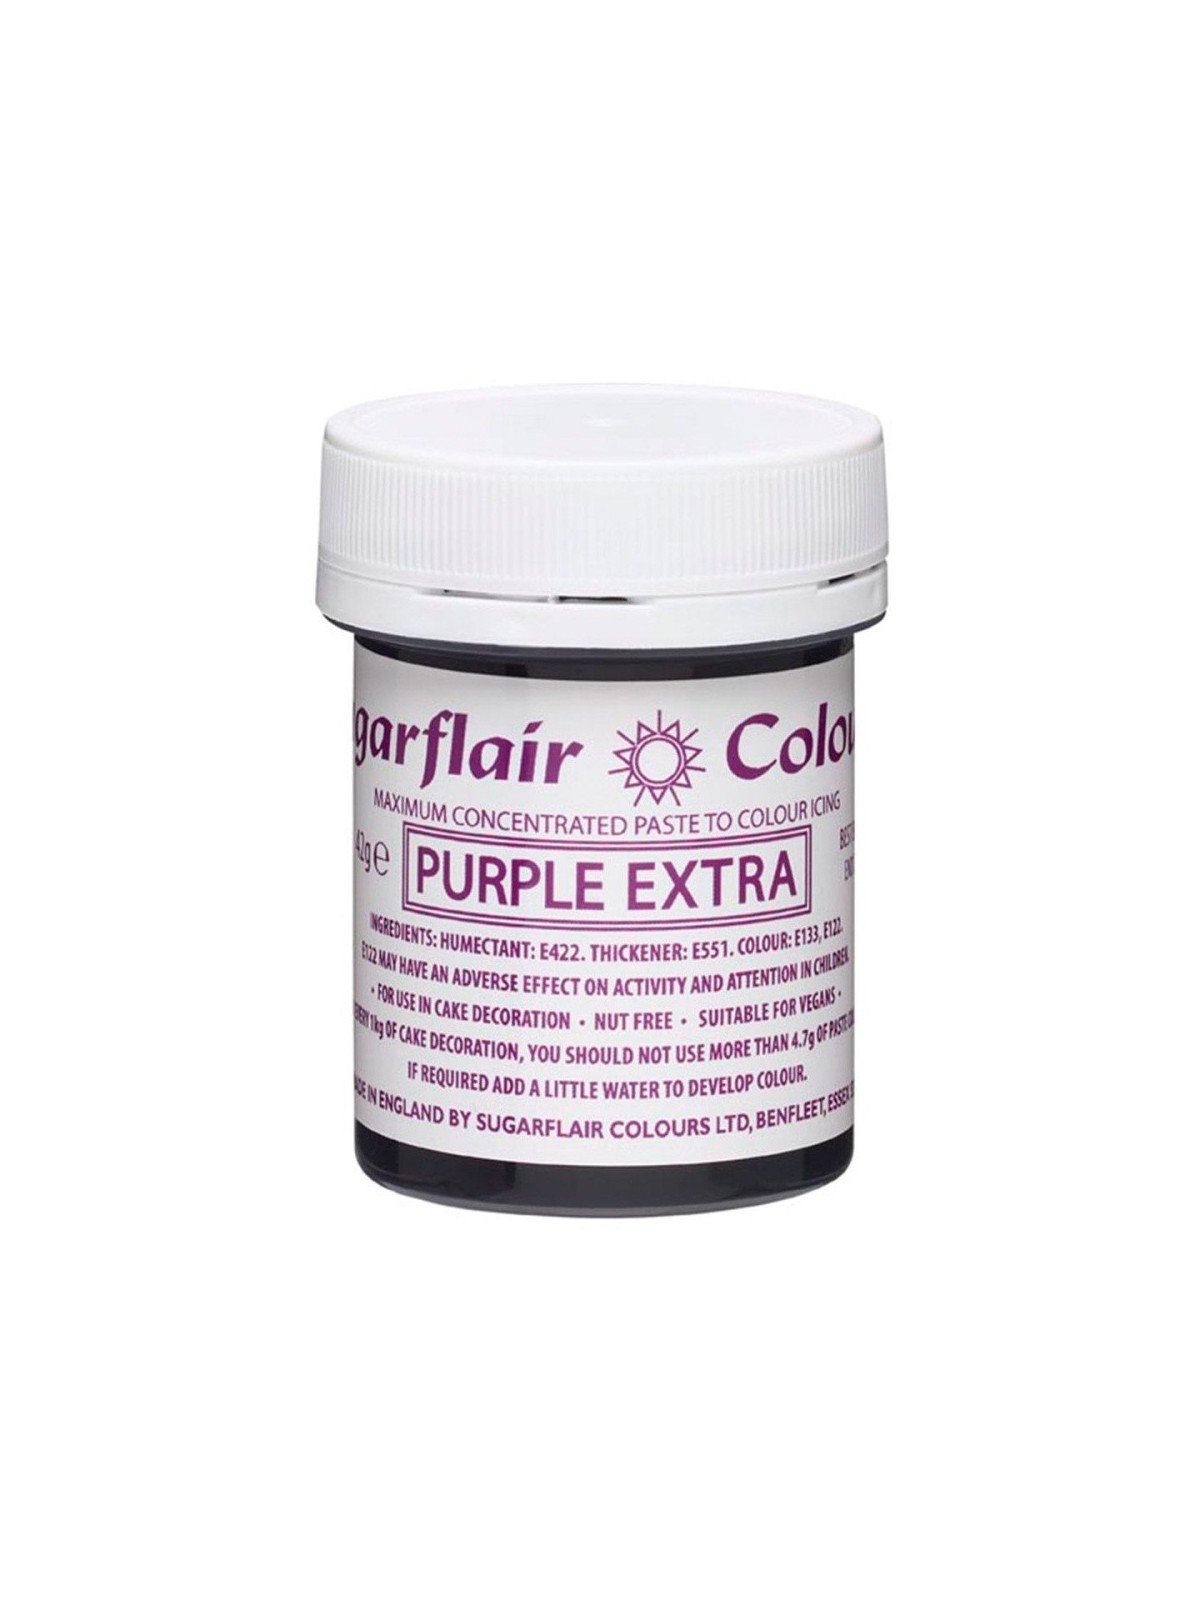 Sugarflair gelová barva - extra fialová - Purple extra 42g